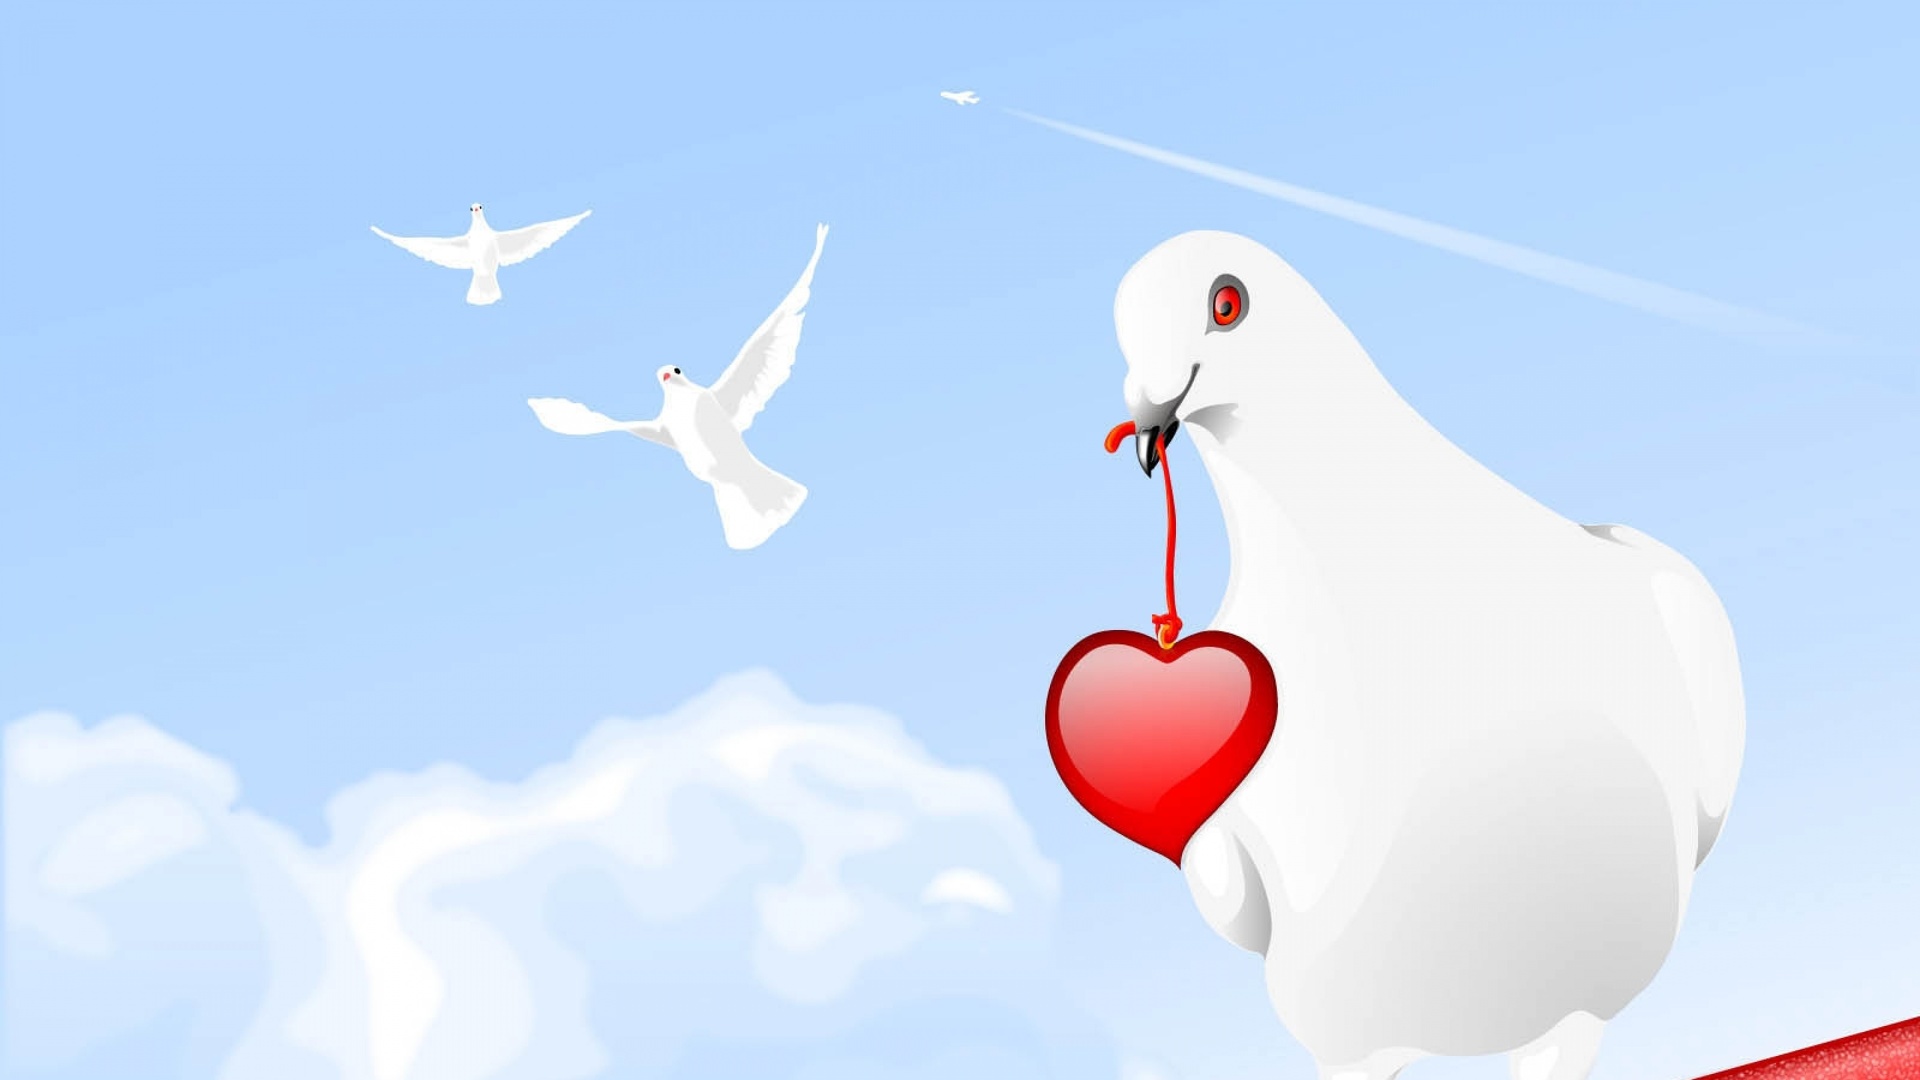 Création graphique - colombes et coeur.jpg